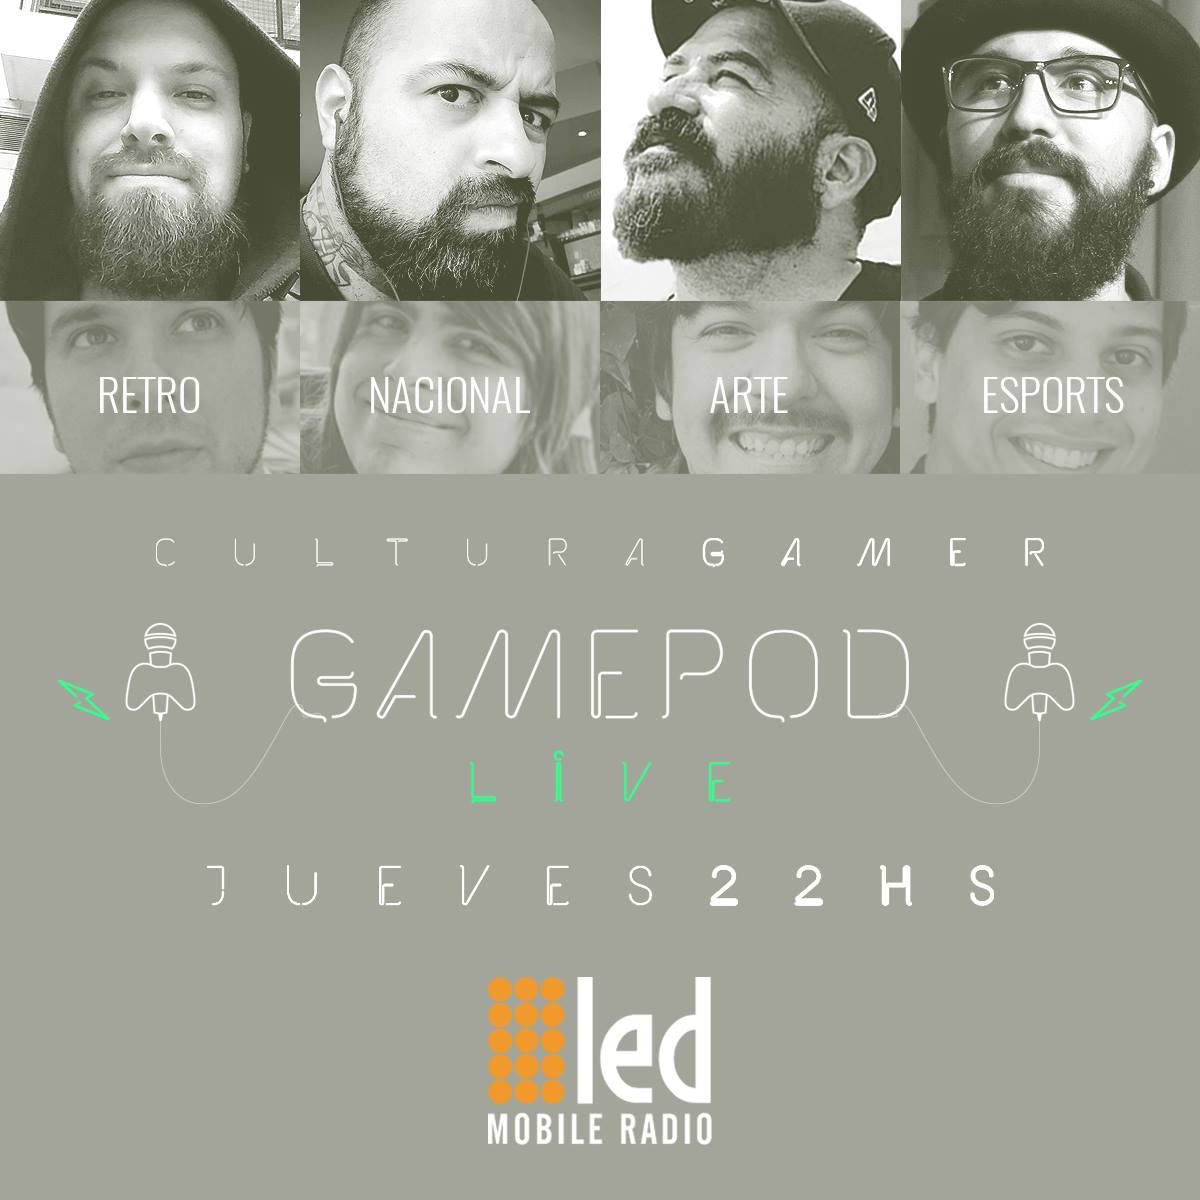 #Podcast GamePod 24.08: Nos visitó @danielben y hablamos sobre #Fidel y su trabajo!